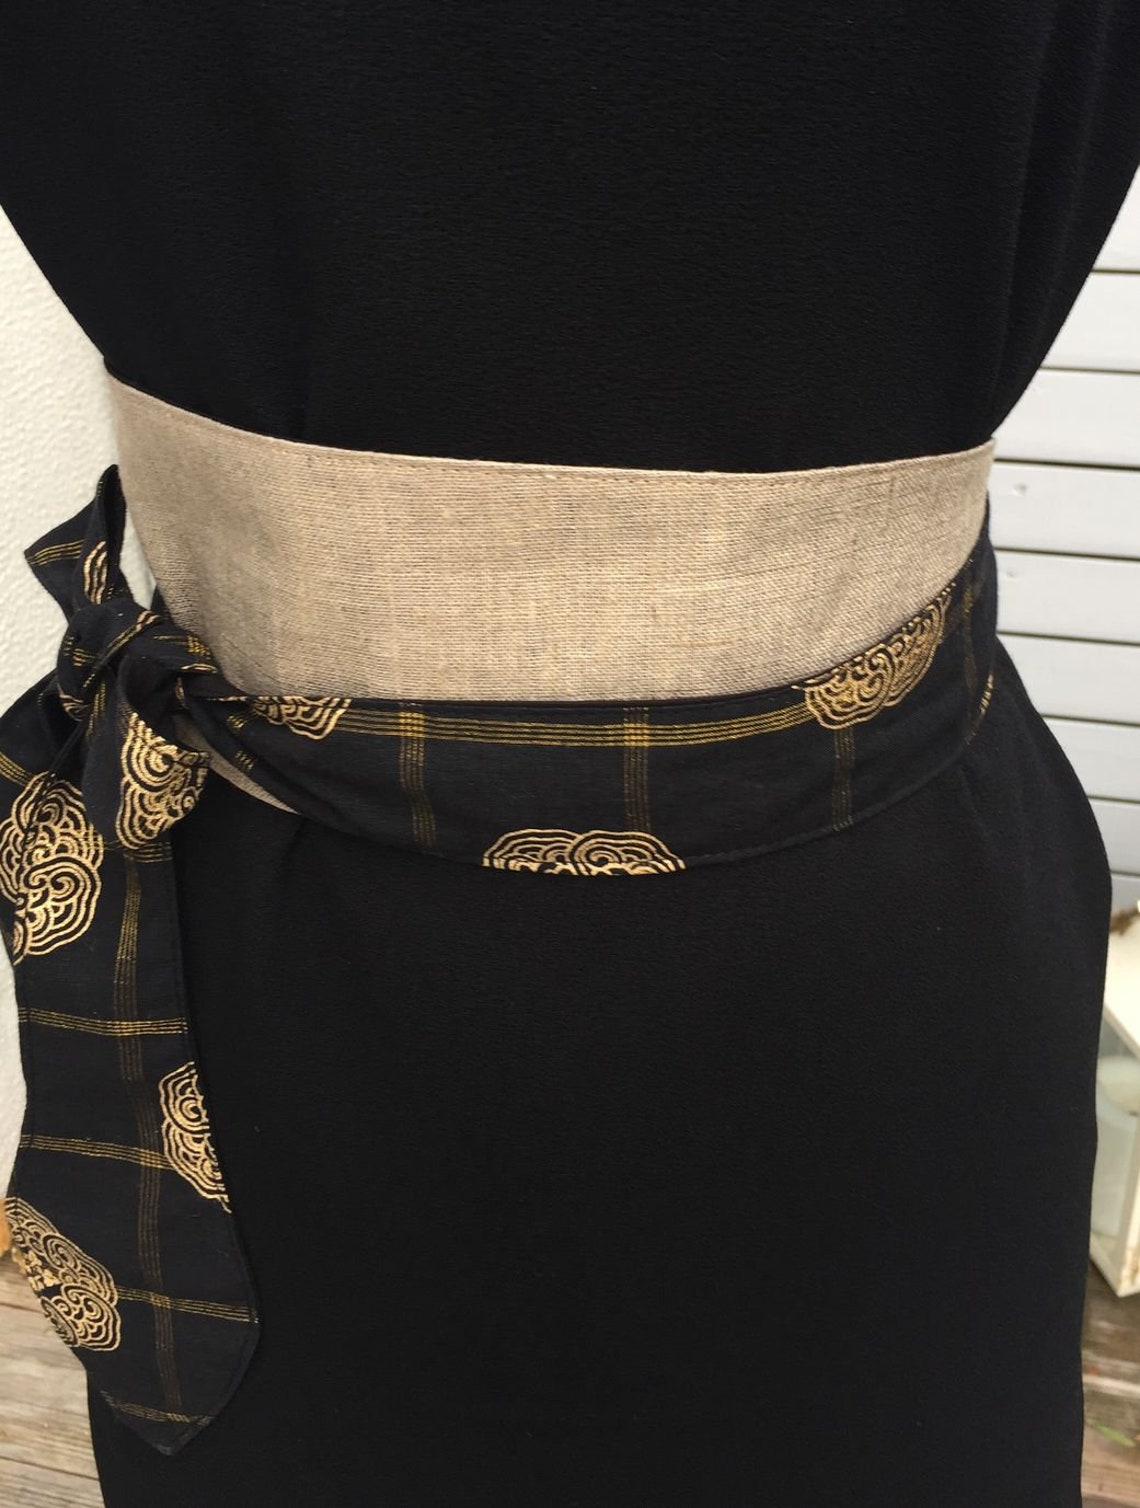 Obi fabric belt central gold linen black and gold back | Etsy